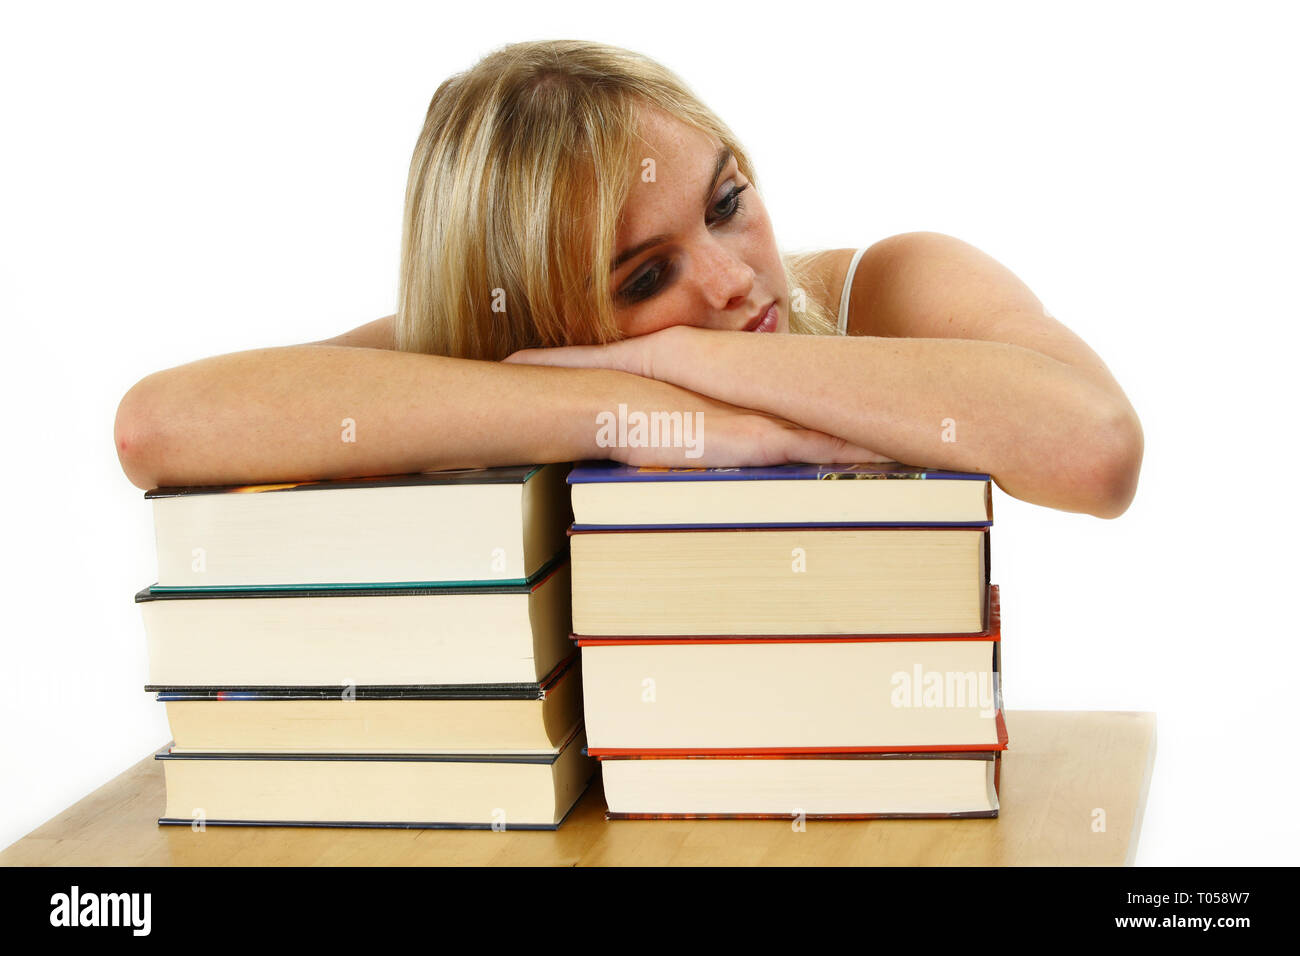 Une jeune femme se penche épuisé sur une pile de livres. Isolé sur un fond blanc. Banque D'Images